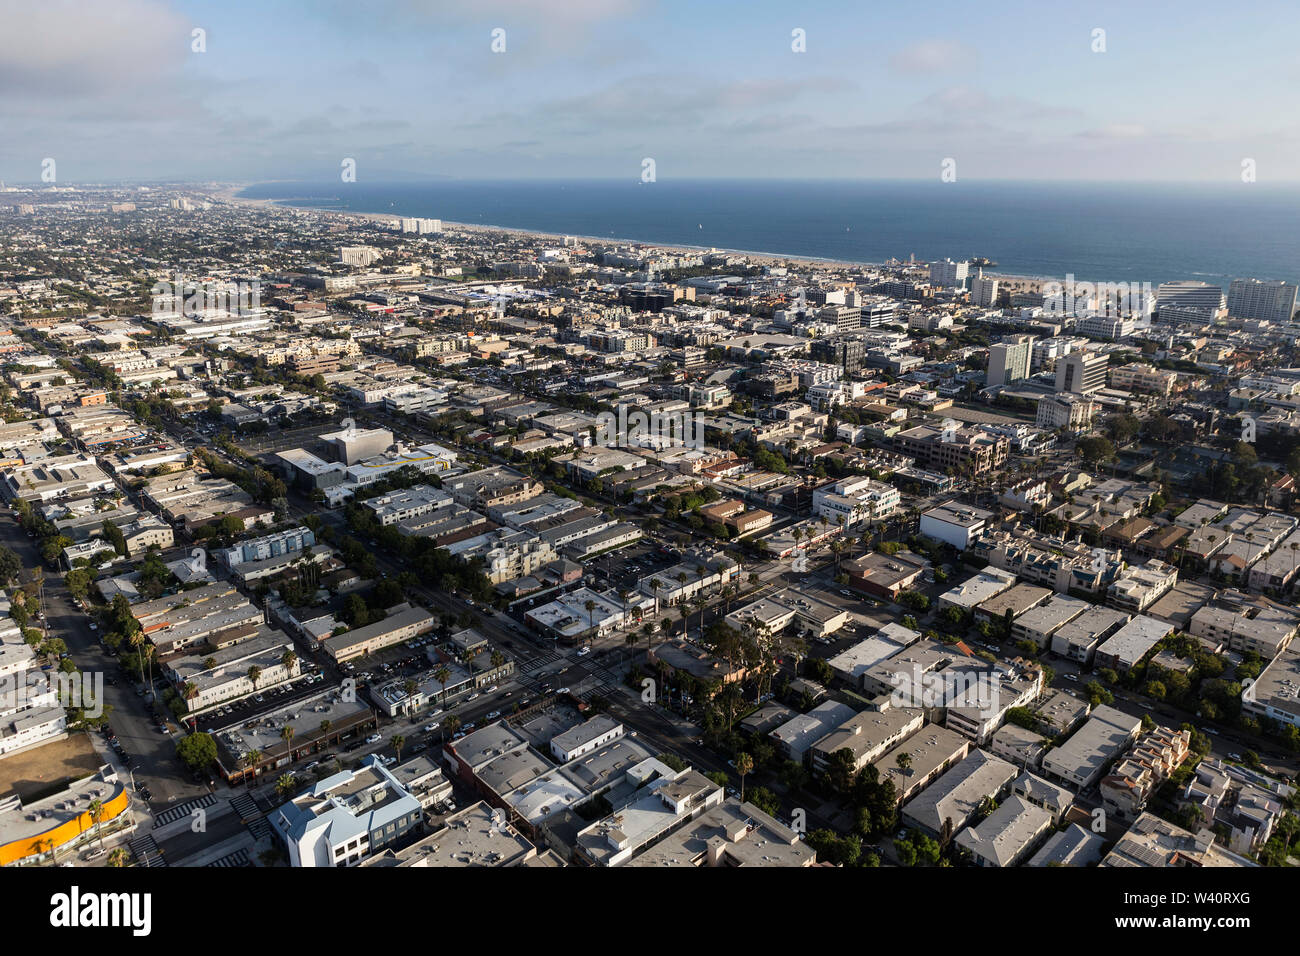 Vue aérienne de la ville de logements et de bâtiments, à proximité du centre-ville de Santa Monica à Los Angeles County, Californie. Banque D'Images